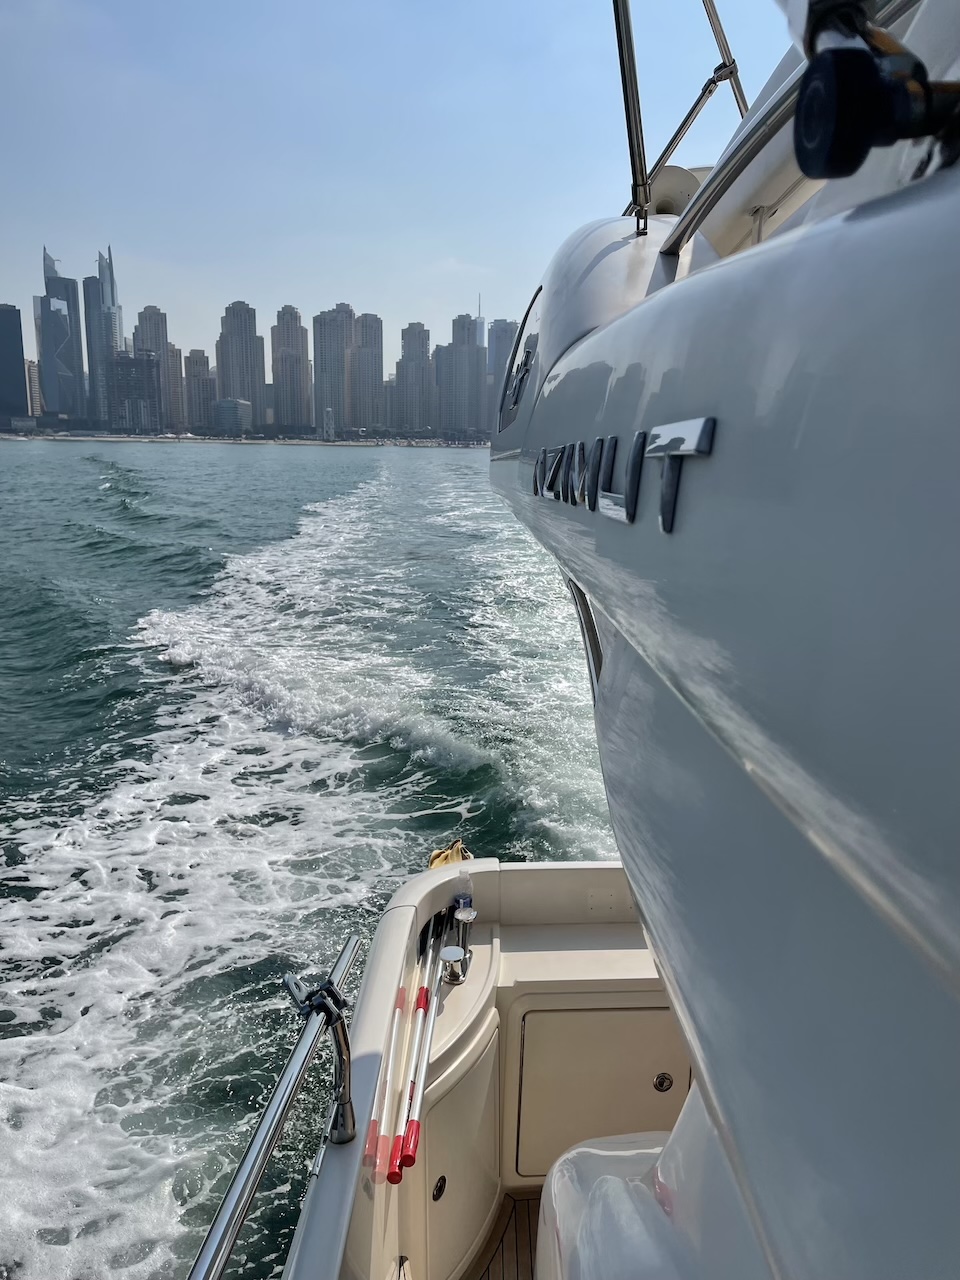 Location de yachts à la Marina de Dubaï: Votre choix pour le voyage maritime idéal